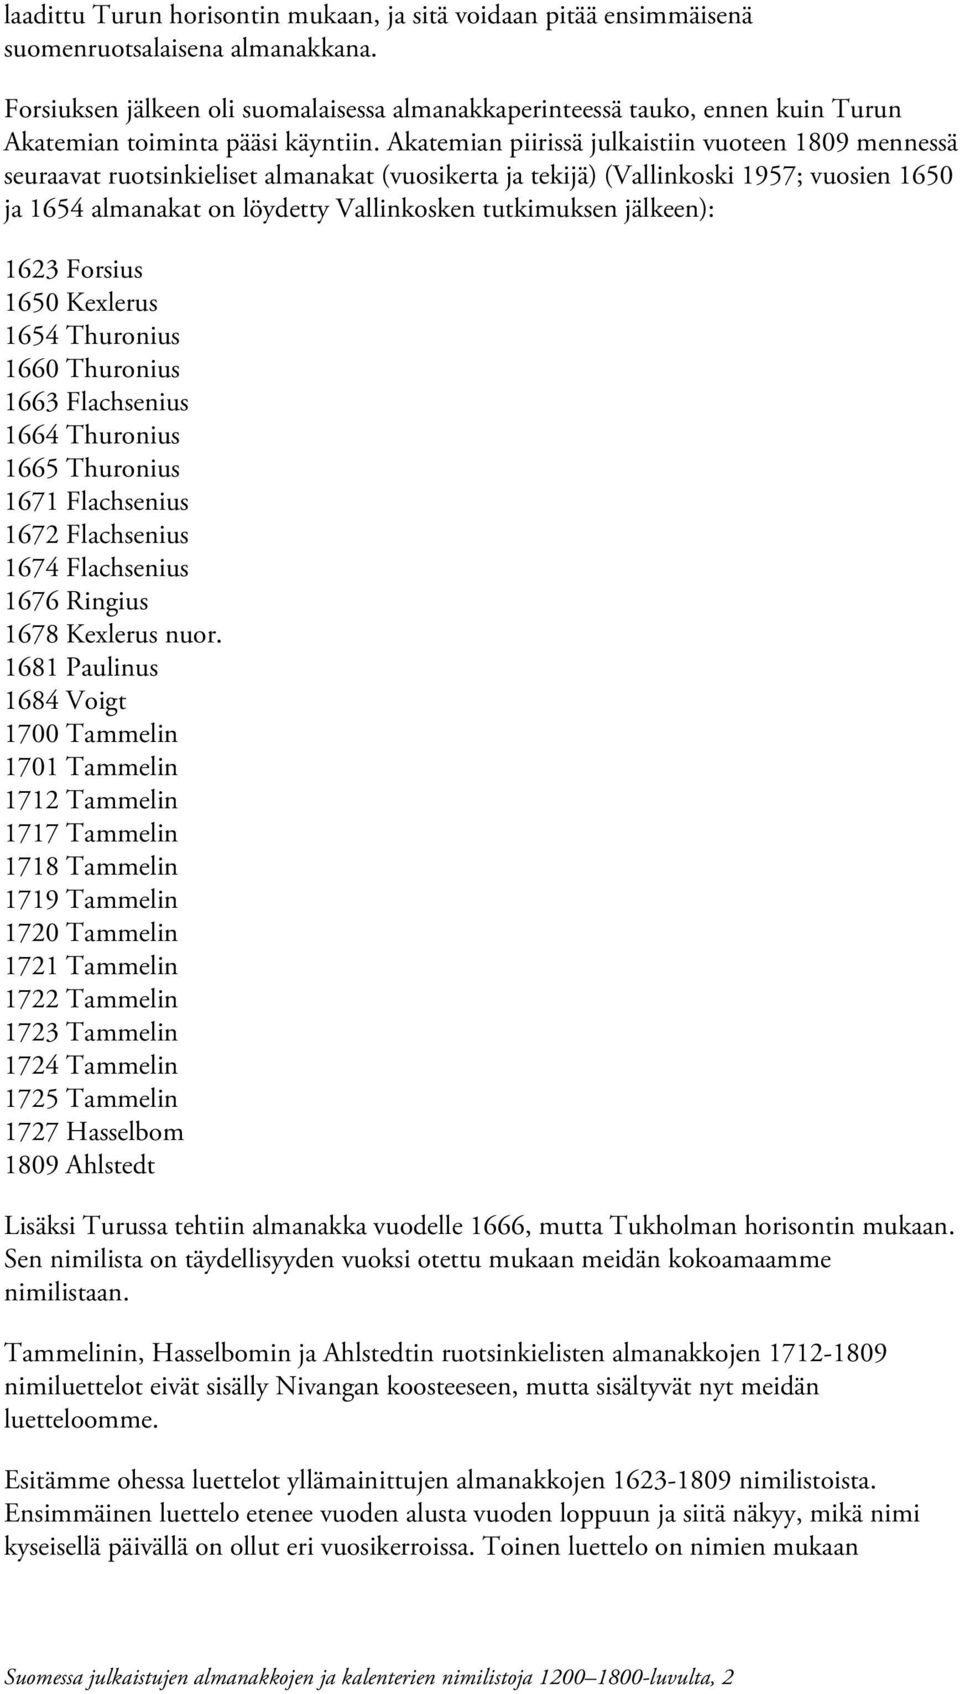 Akatemian piirissä julkaistiin vuoteen 1809 mennessä seuraavat ruotsinkieliset almanakat (vuosikerta ja tekijä) (Vallinkoski 1957; vuosien 1650 ja 1654 almanakat on löydetty Vallinkosken tutkimuksen